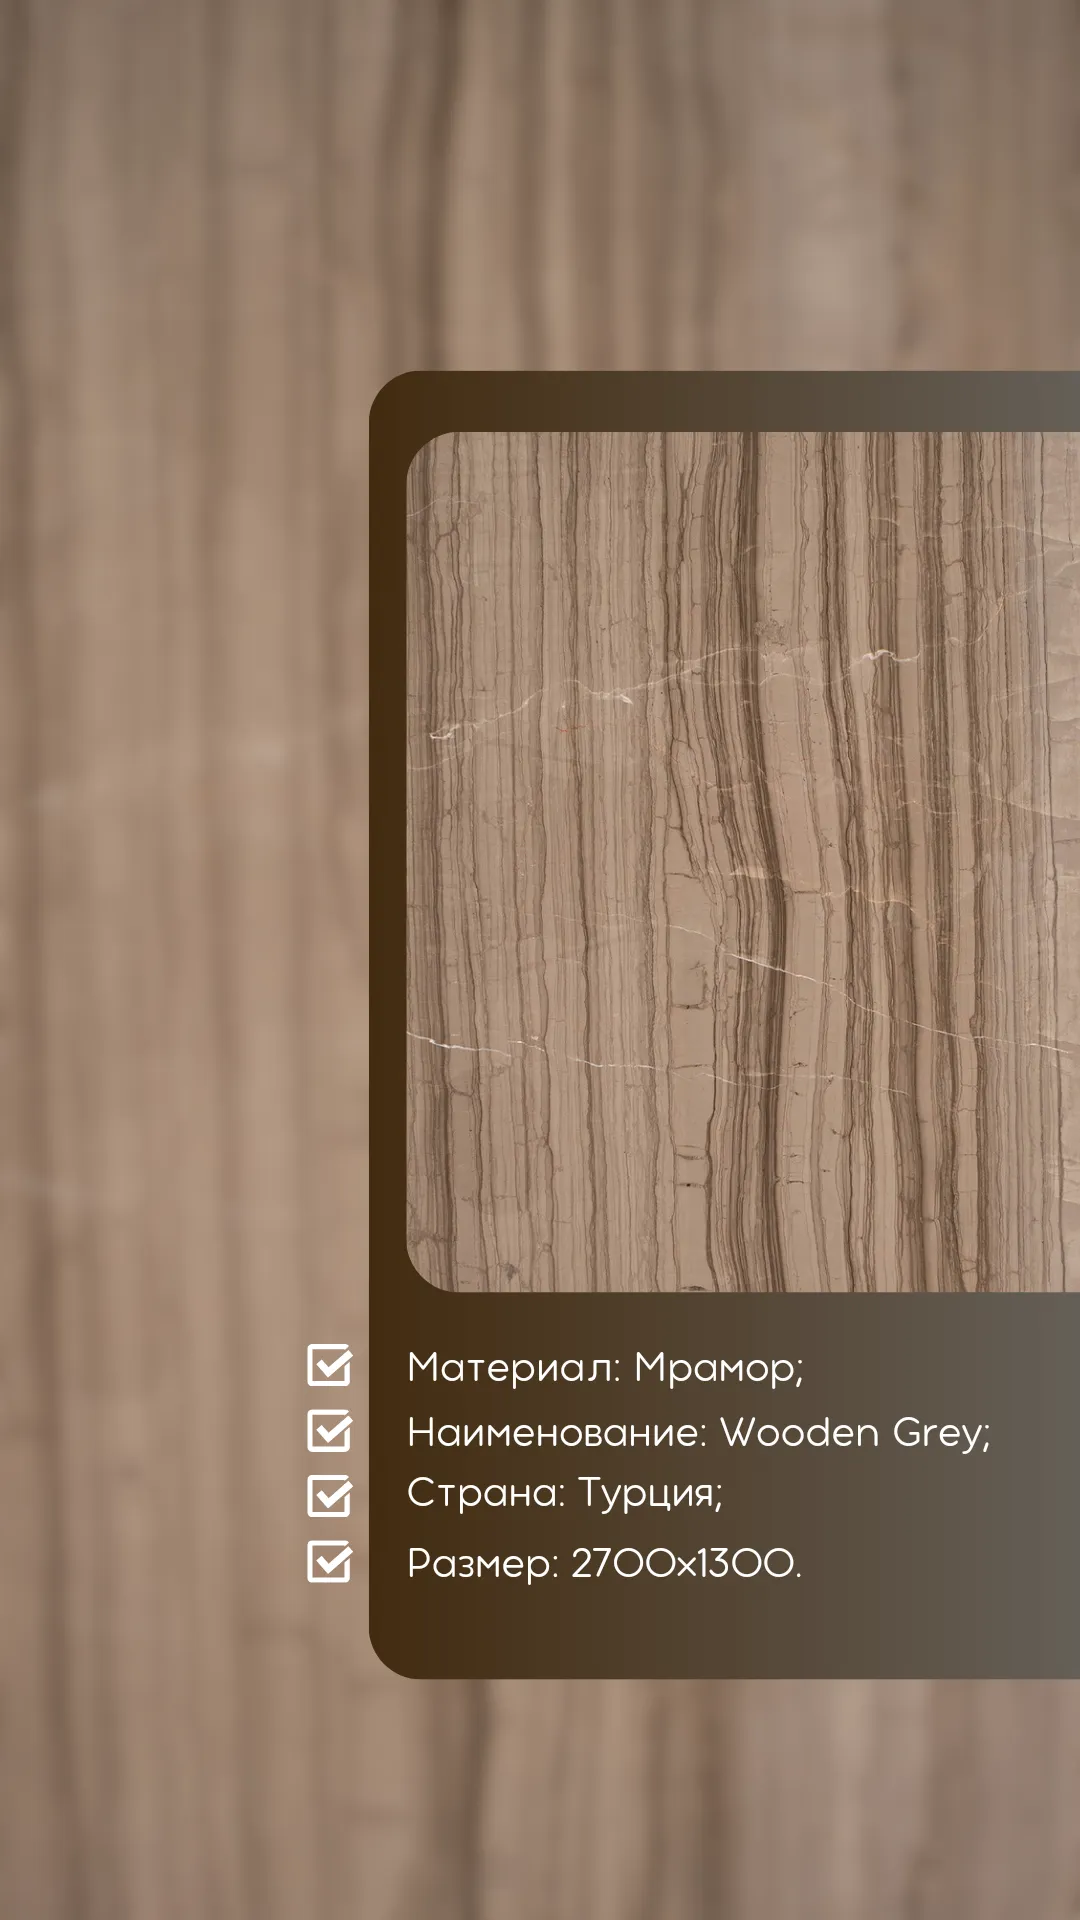 Wooden Grey Tabiiy Marmar Tosh#1